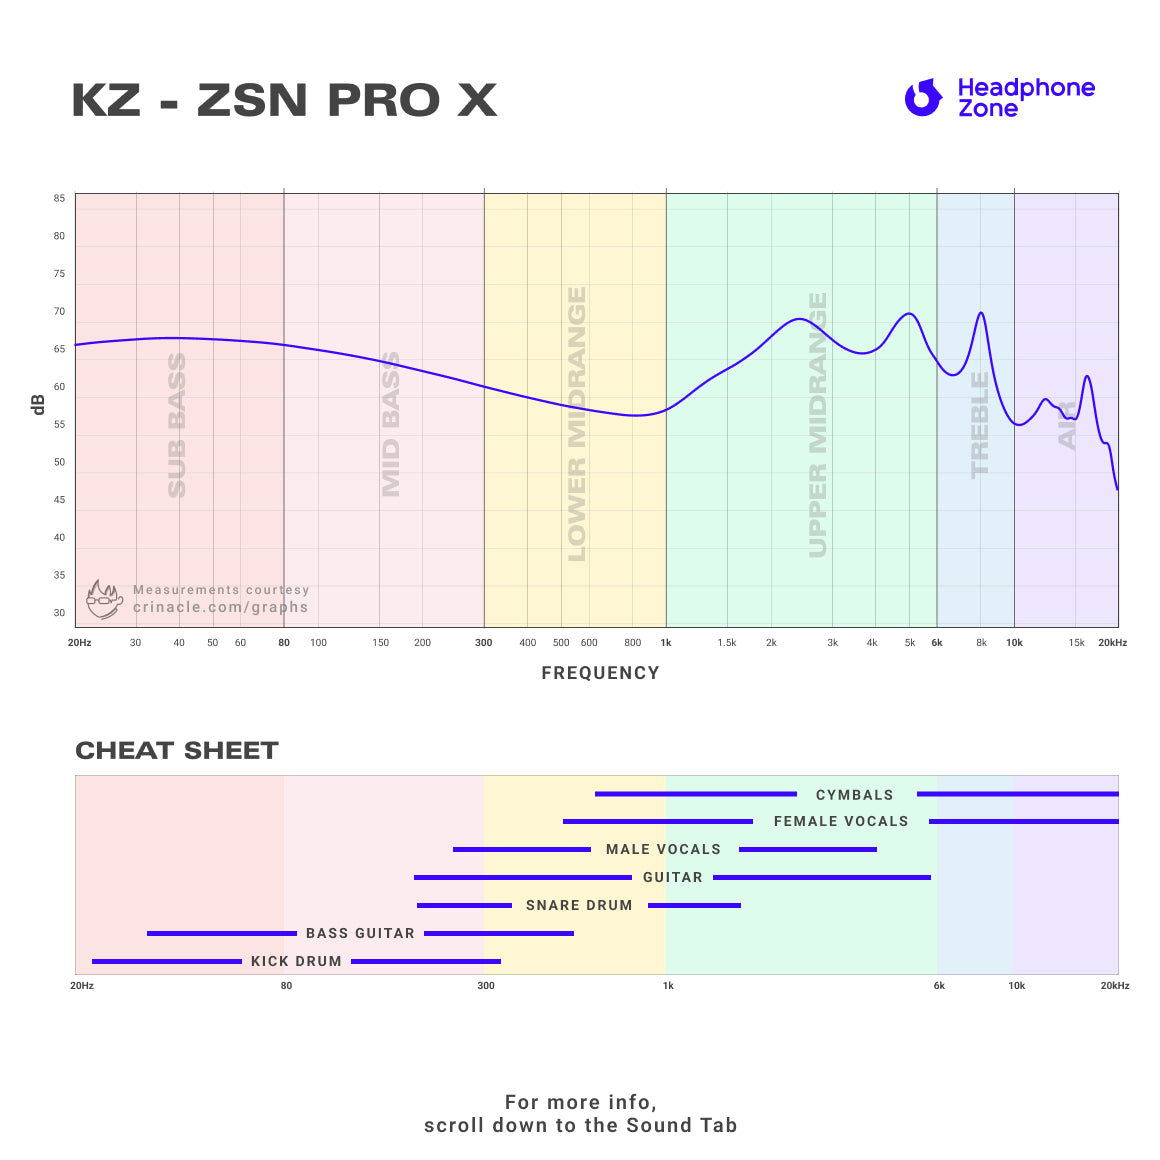 KZ - ZSN Pro X (Unboxed)